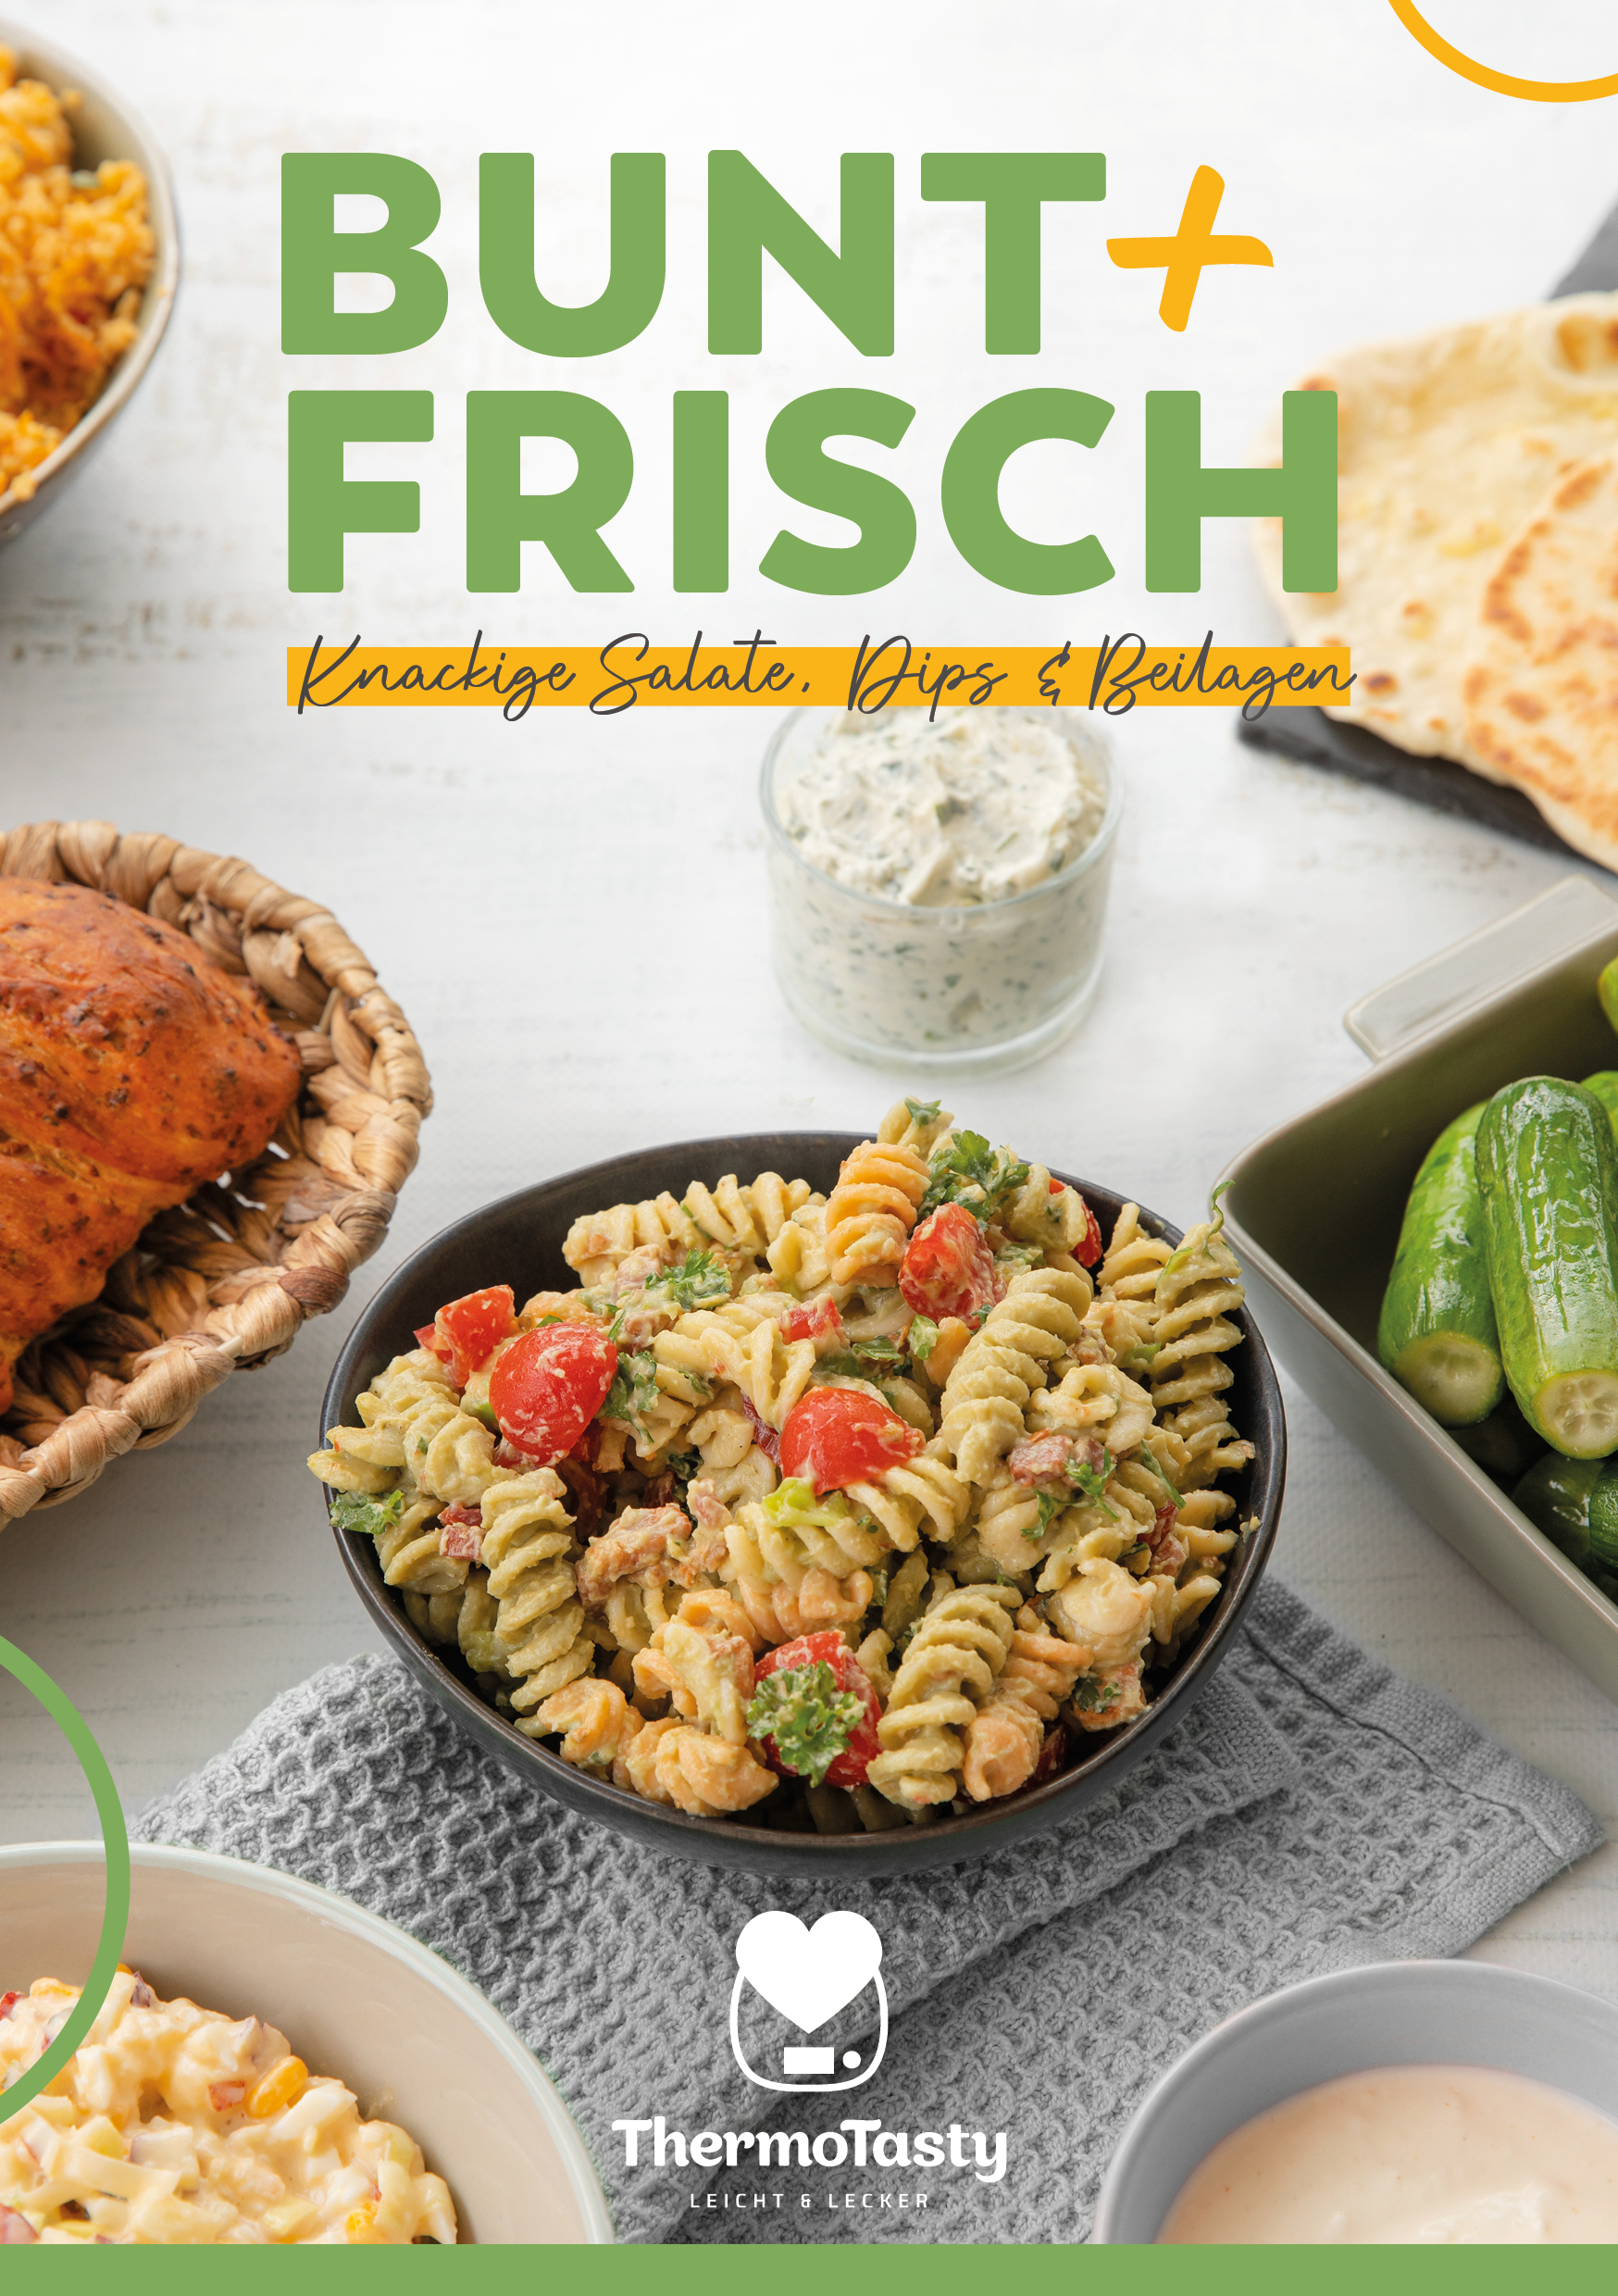 Bunt & Frisch: Knackige Salate, Dips & Beilagen